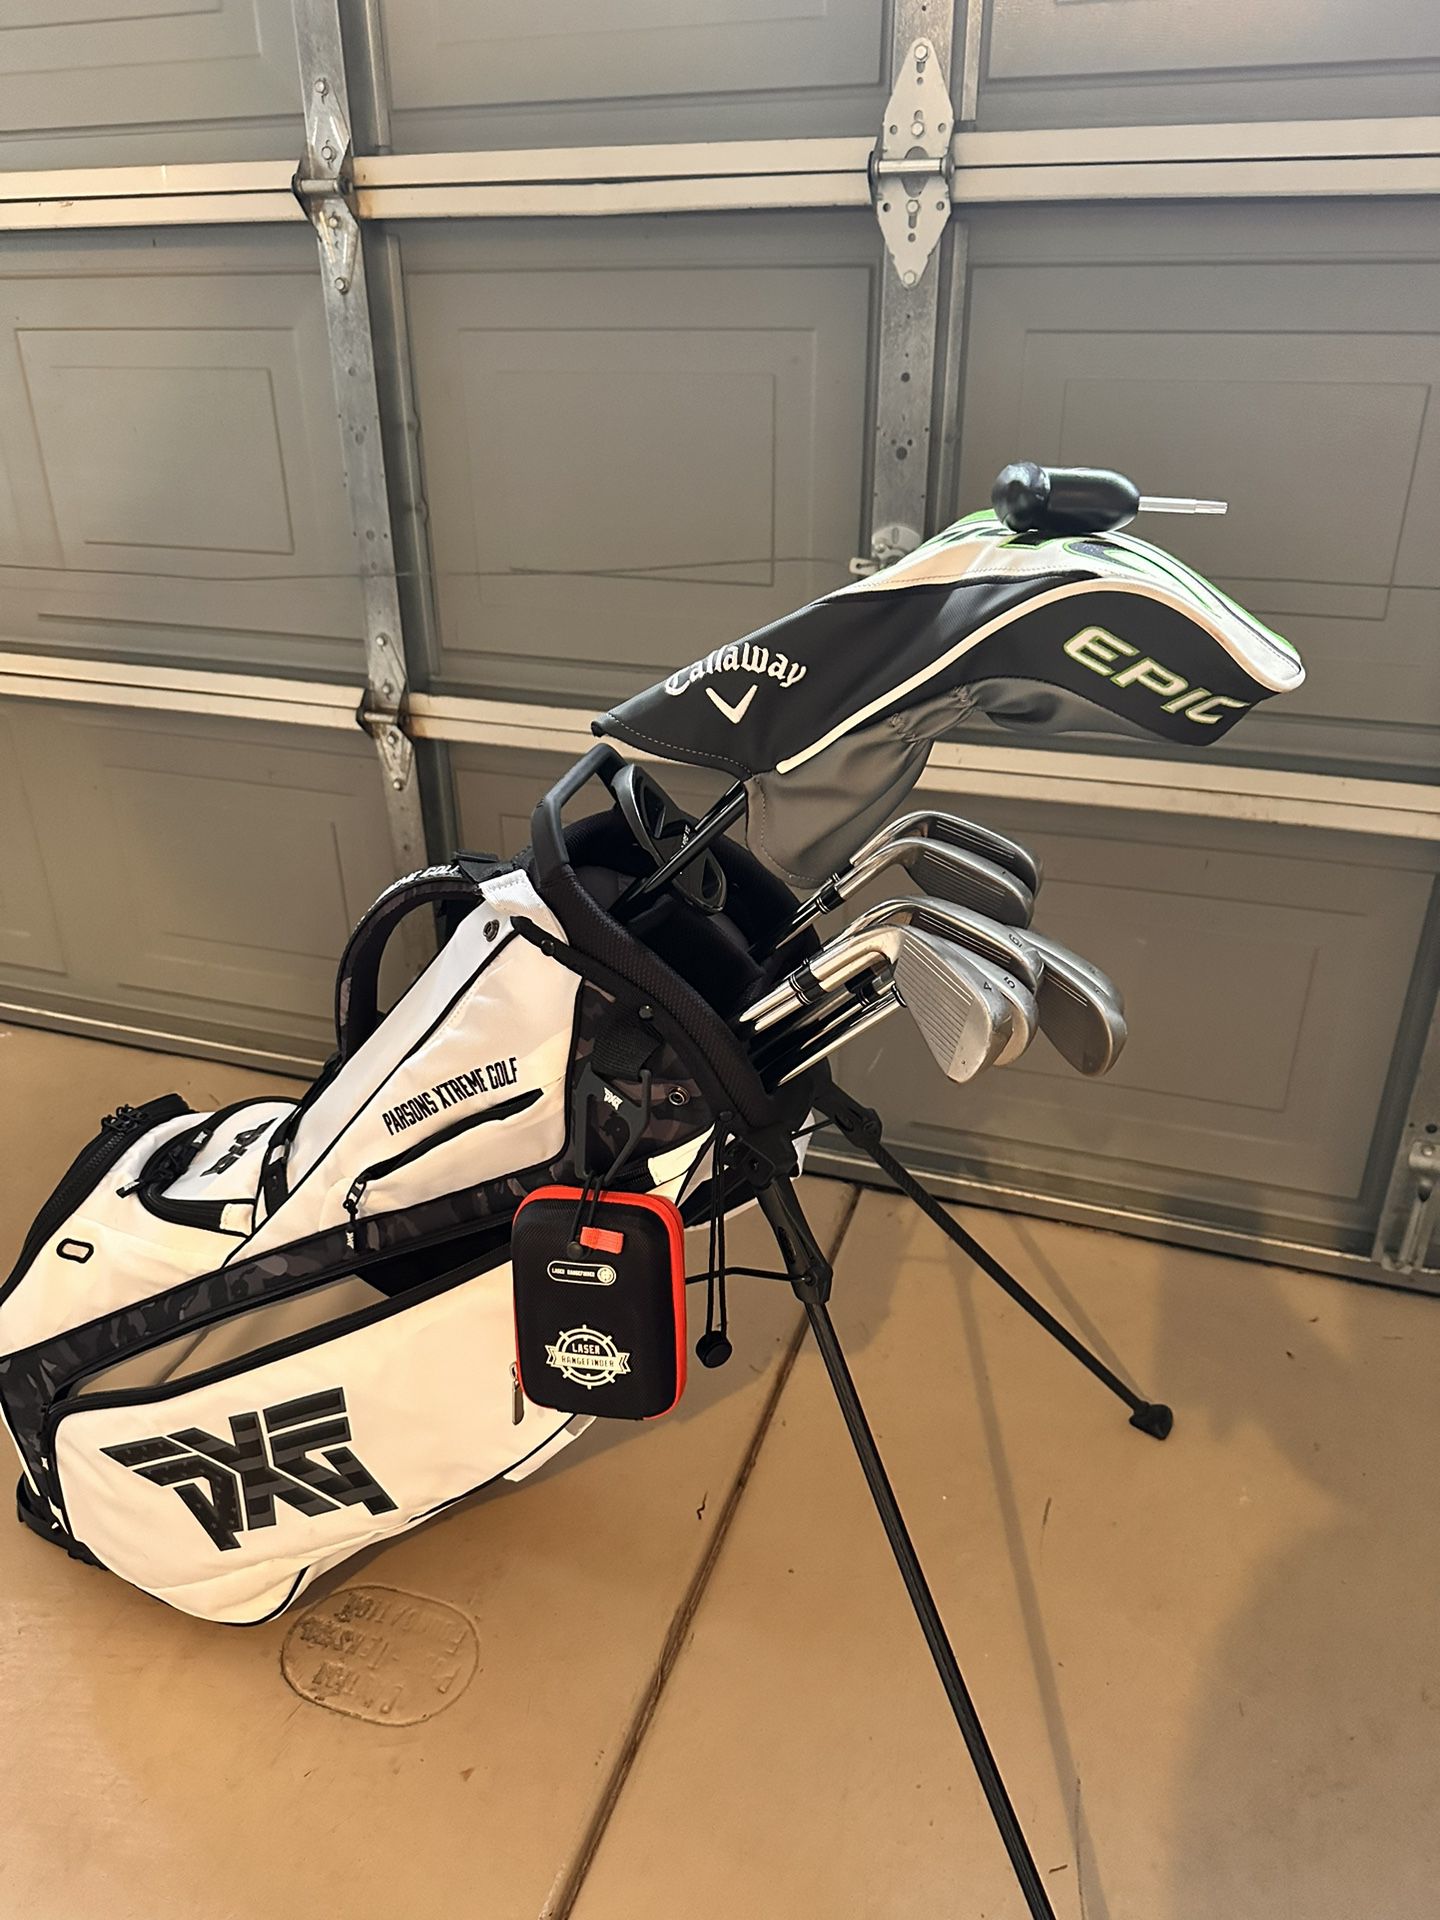 Golf Club Set w/ Bag and Rangefinder 